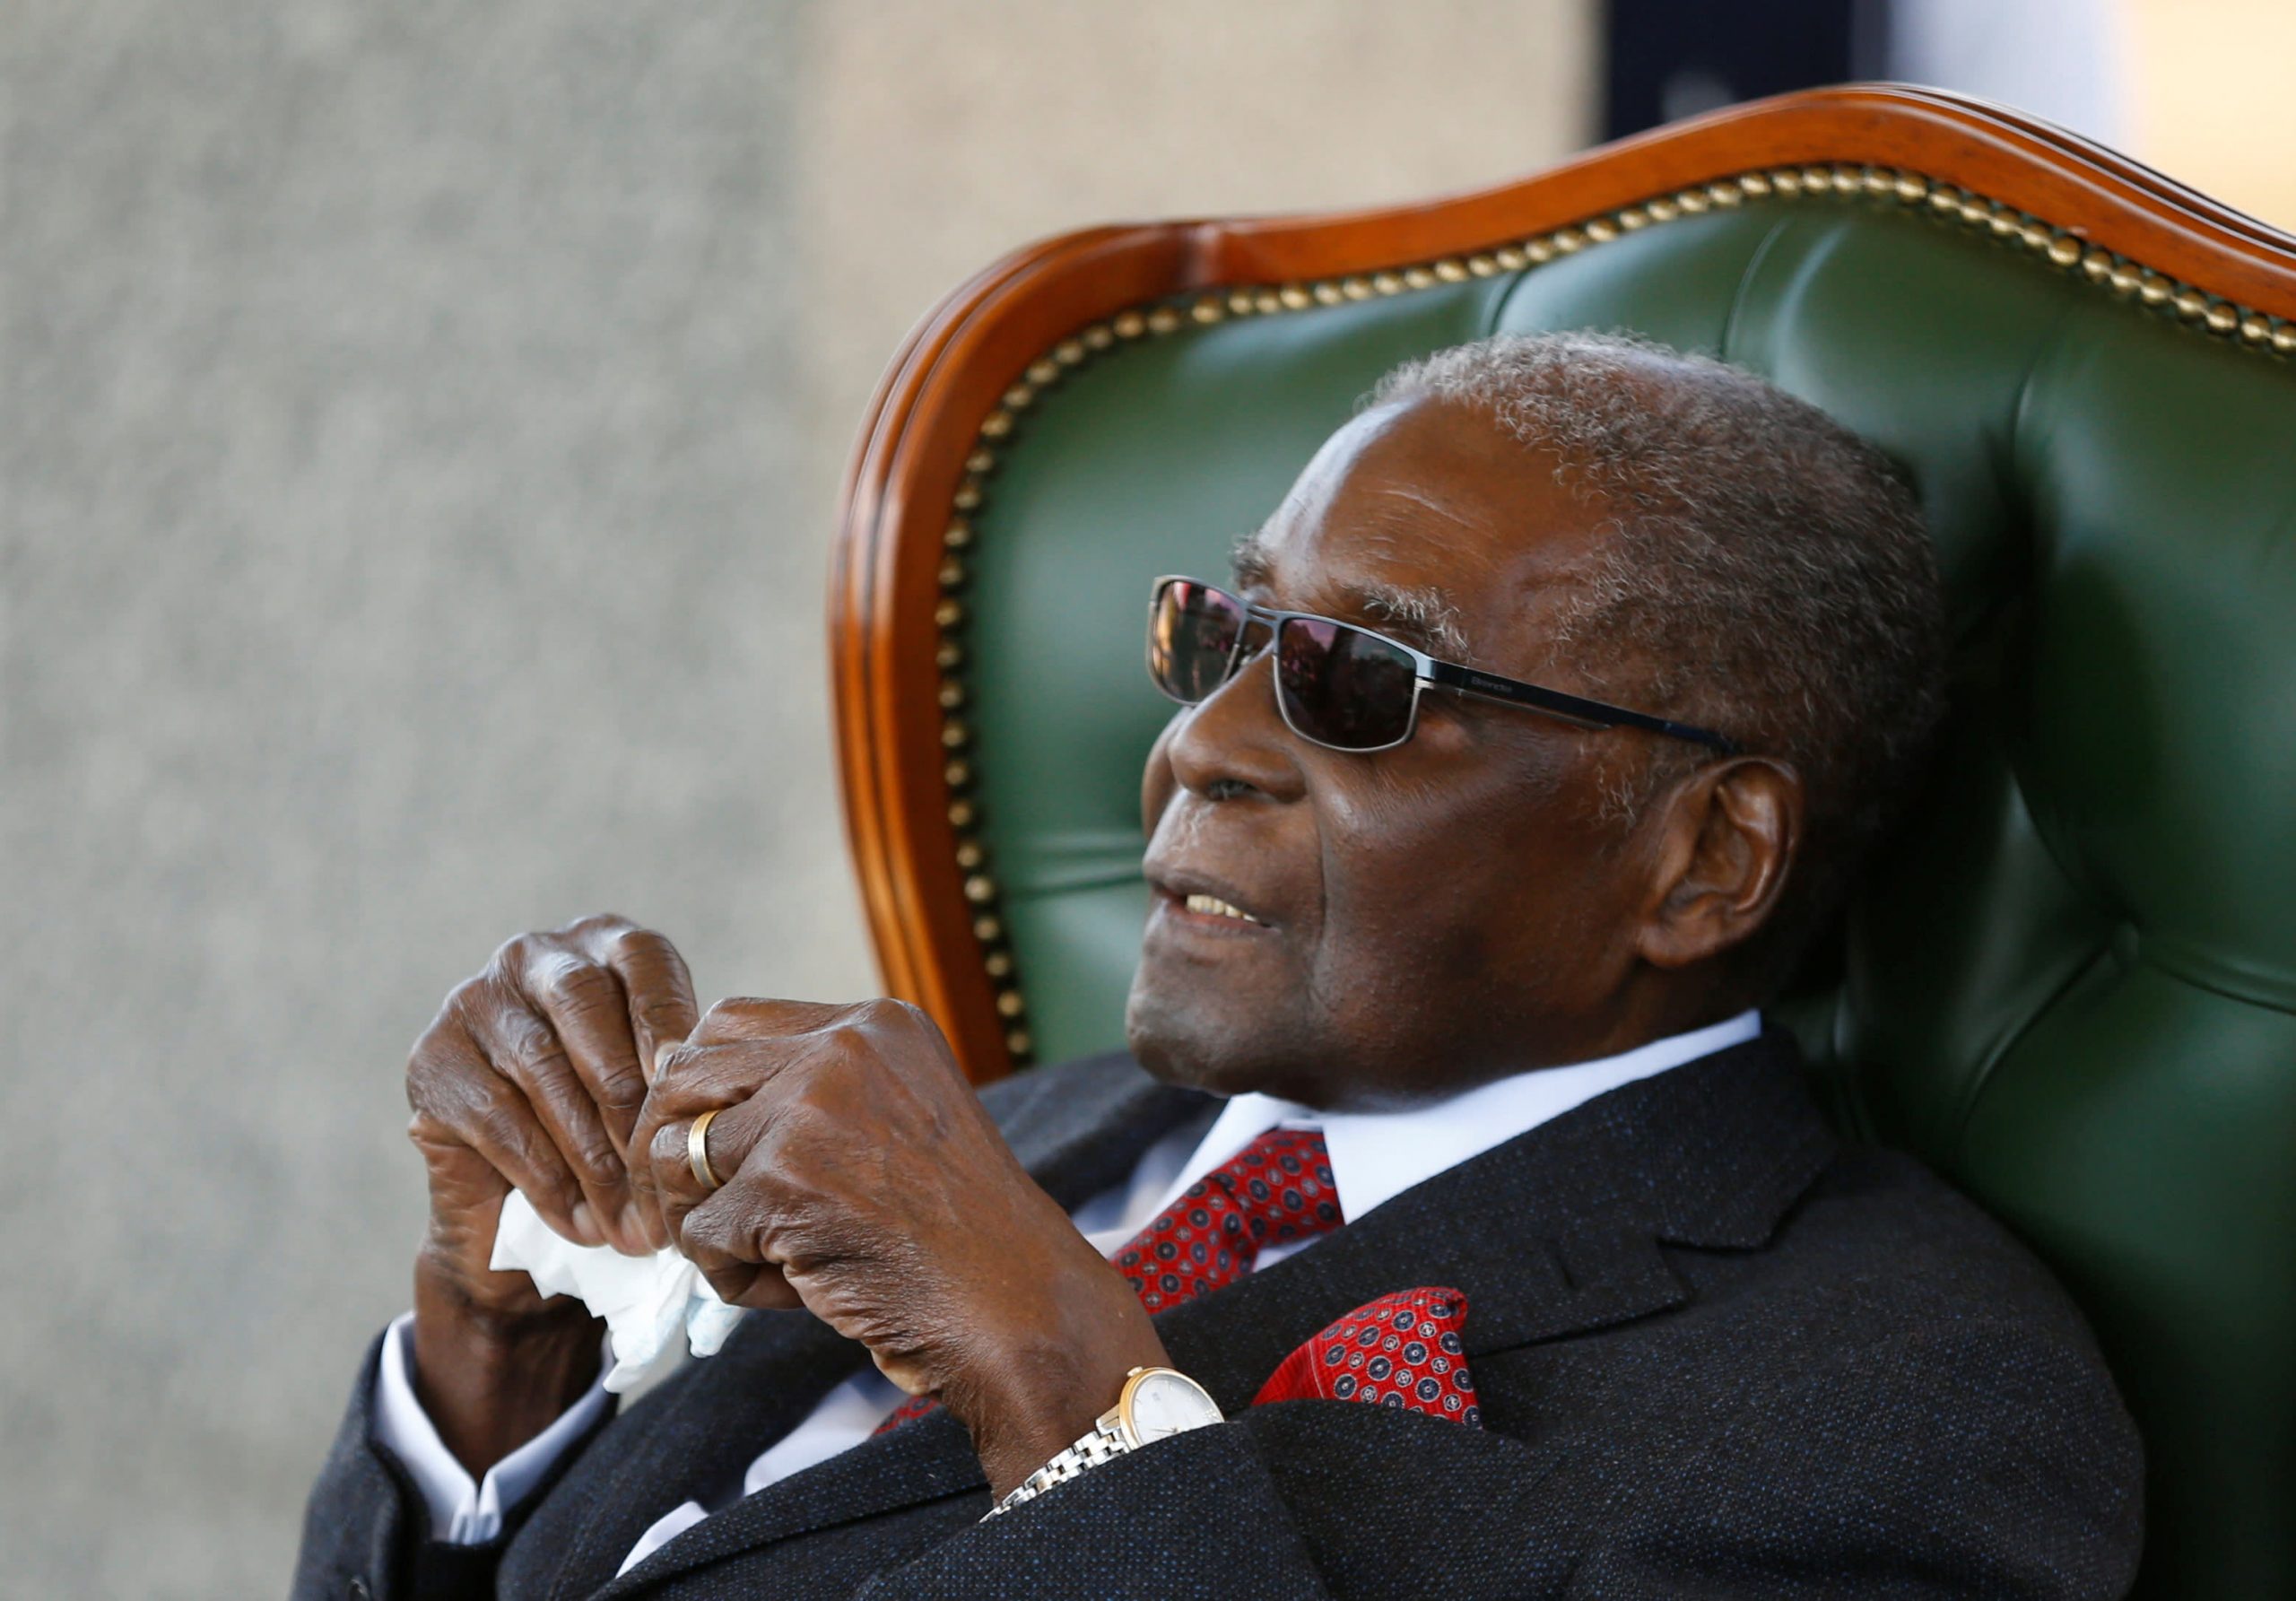 Hantida Robert Mugabe oo la Shaaciyay